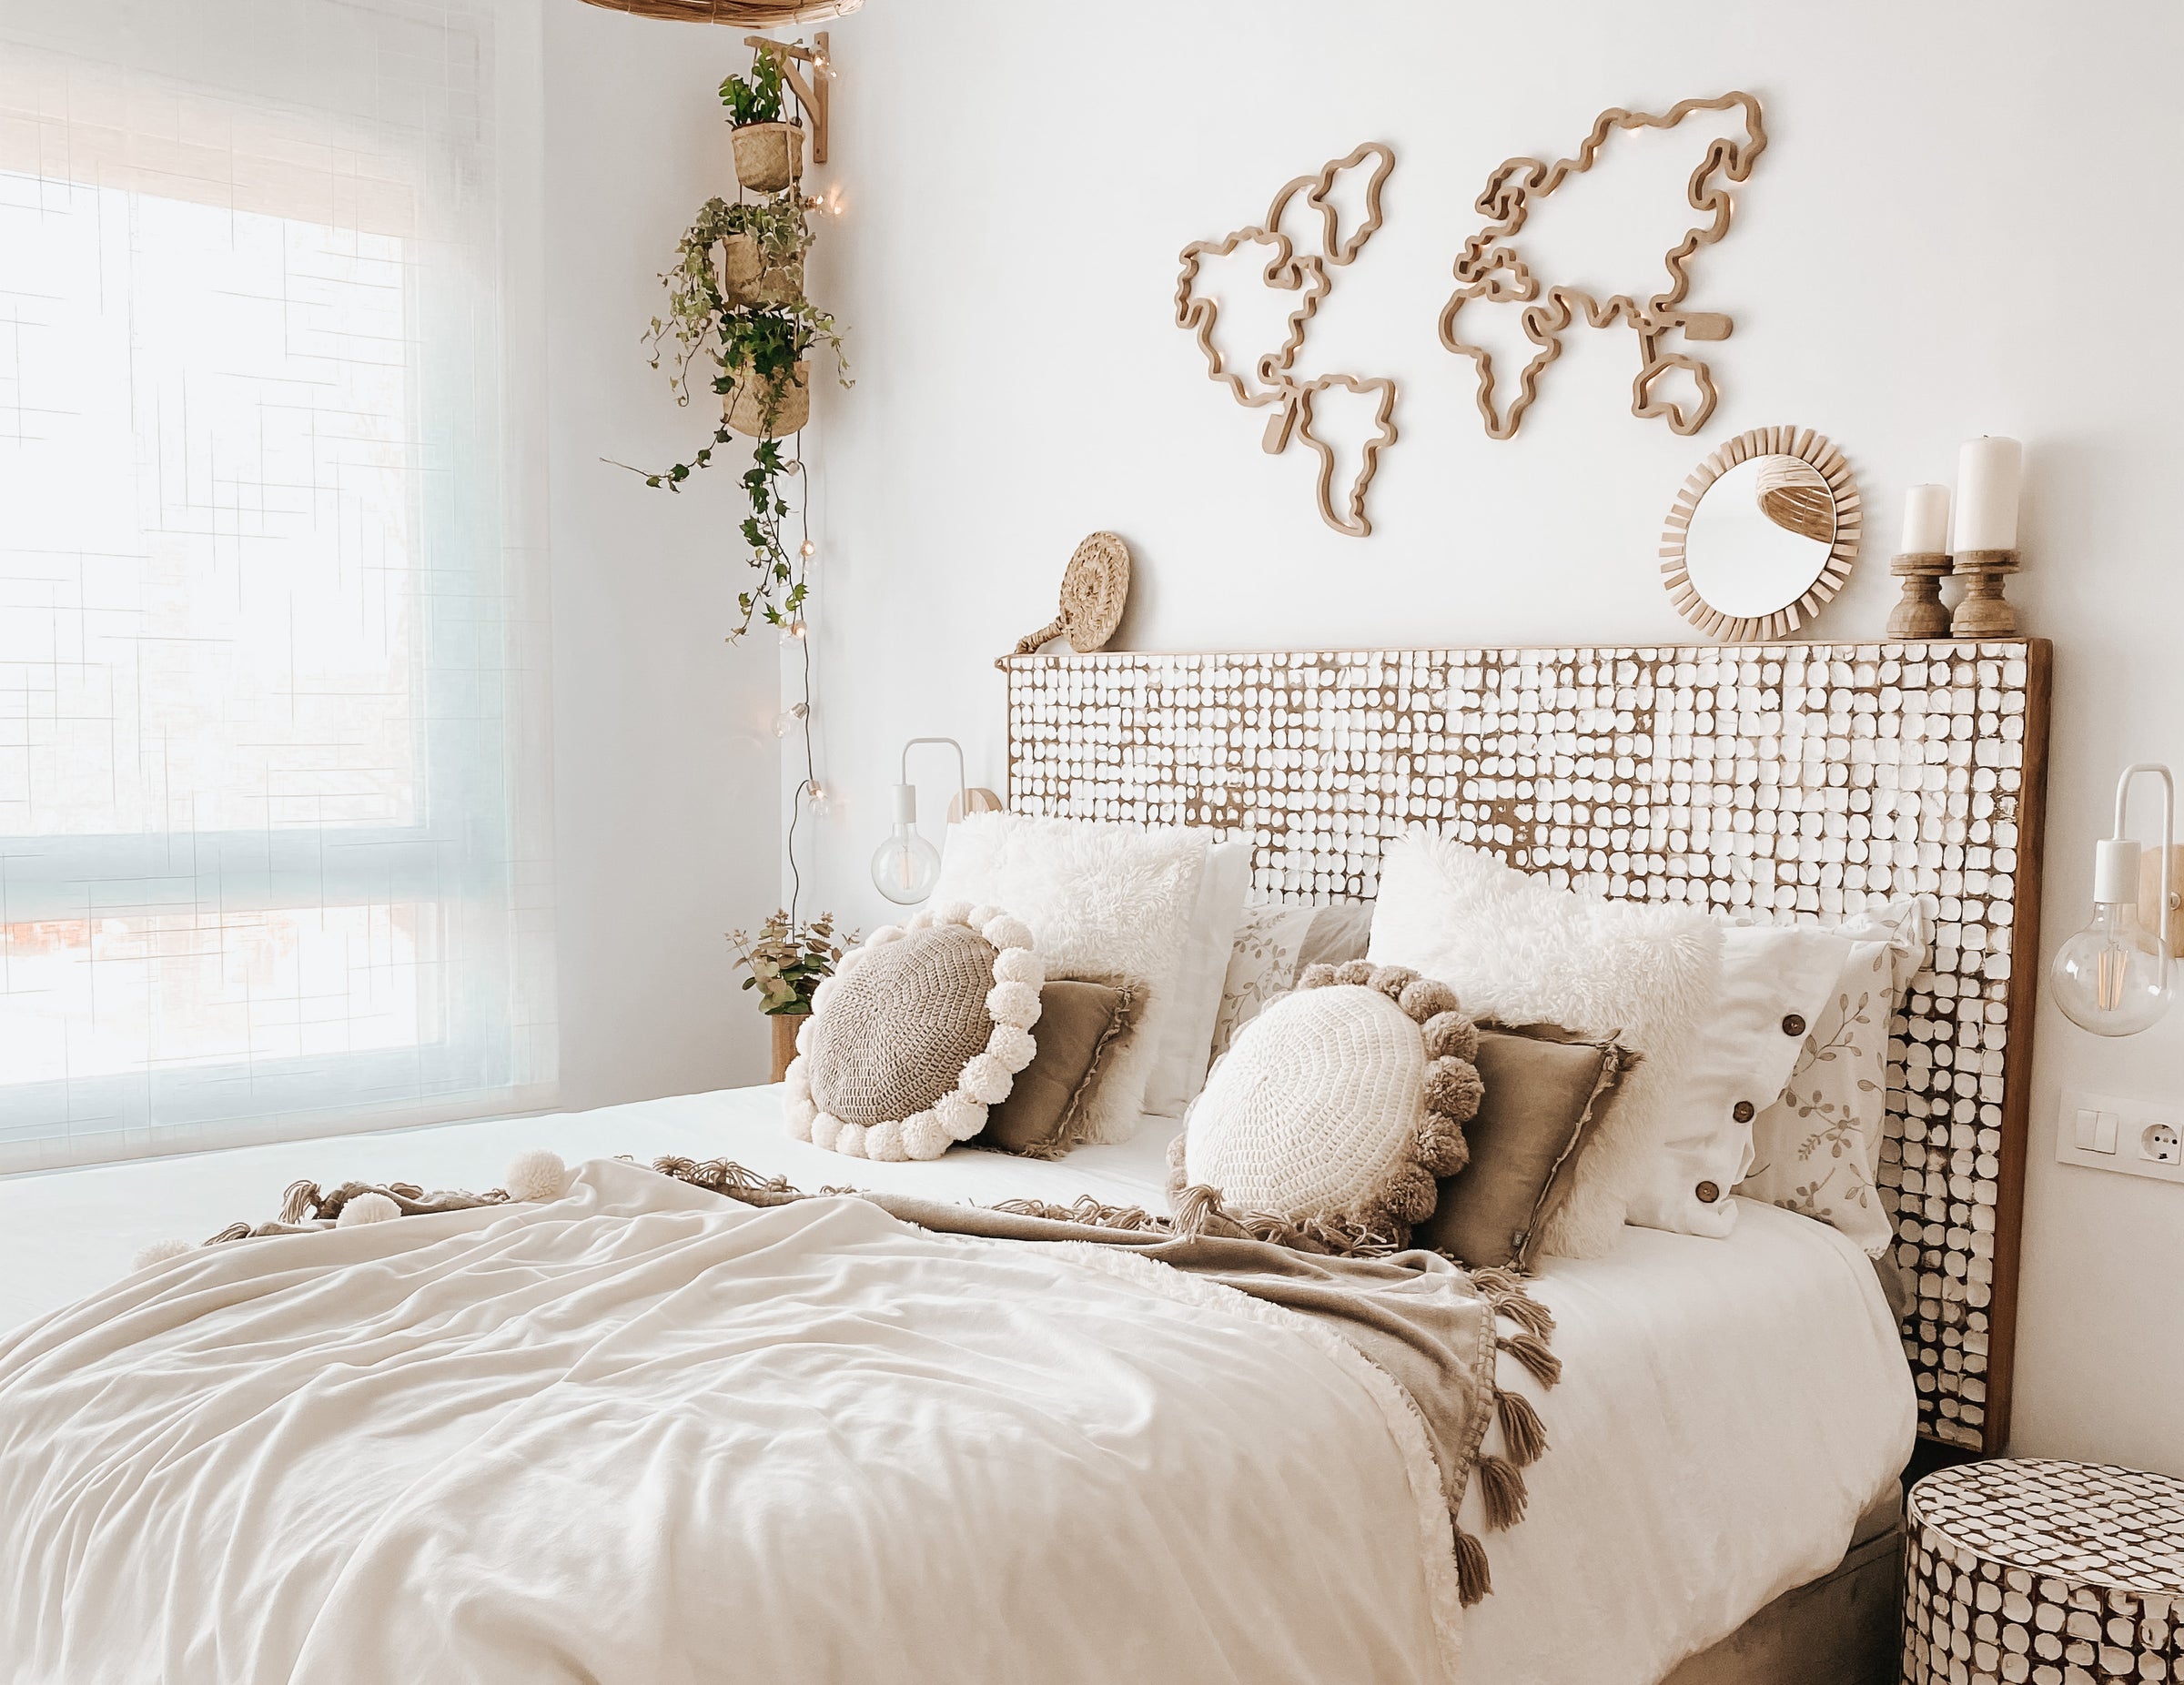 Cómo decorar la pared del cabecero de la cama de matrimonio - Bien hecho